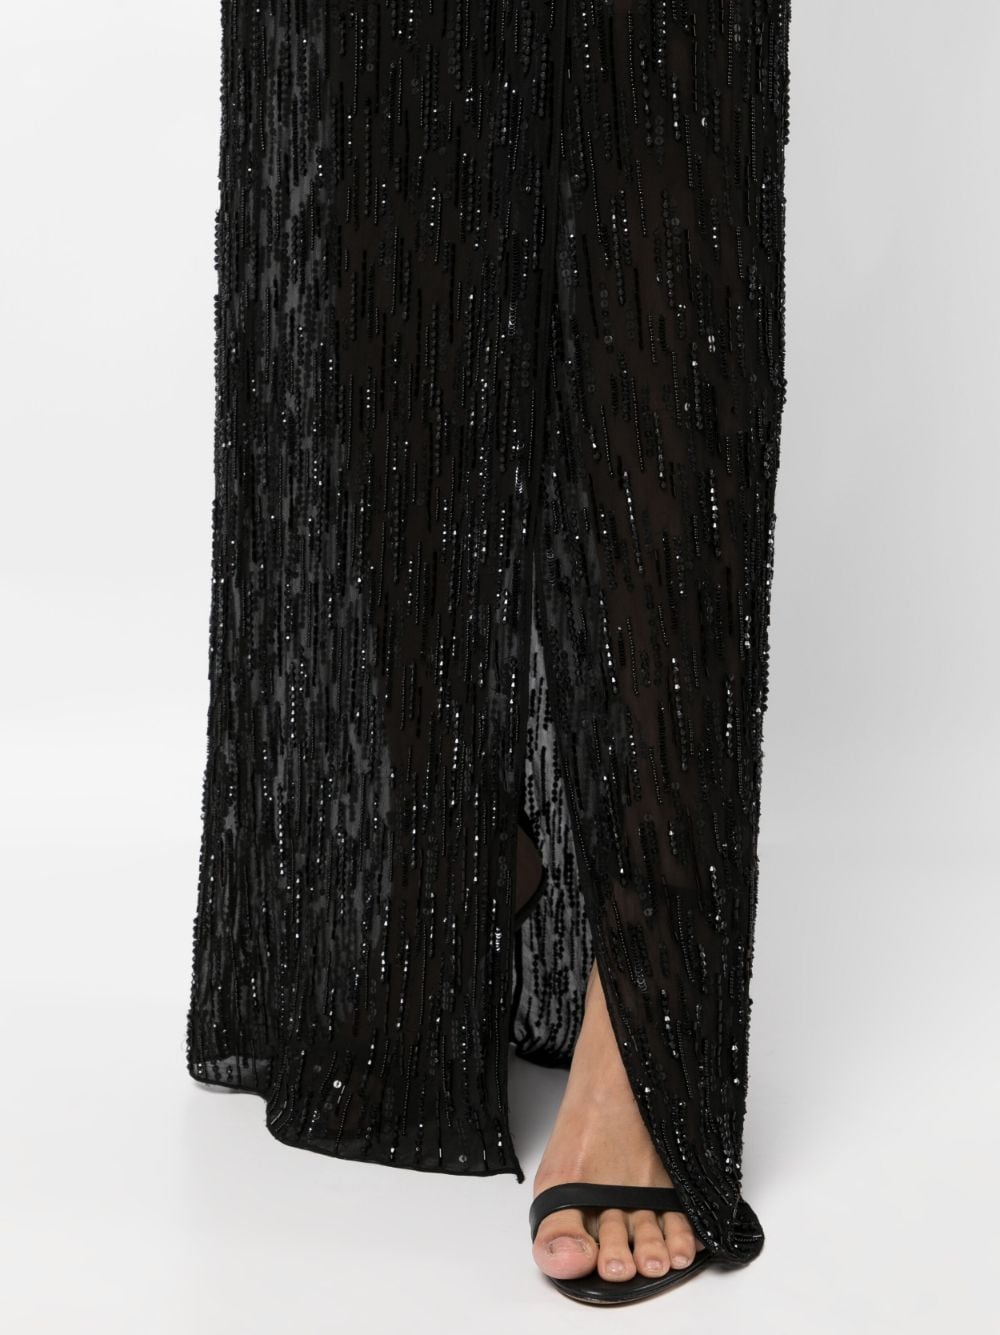 Shop Jenny Packham Ava Embellished Gown In Black